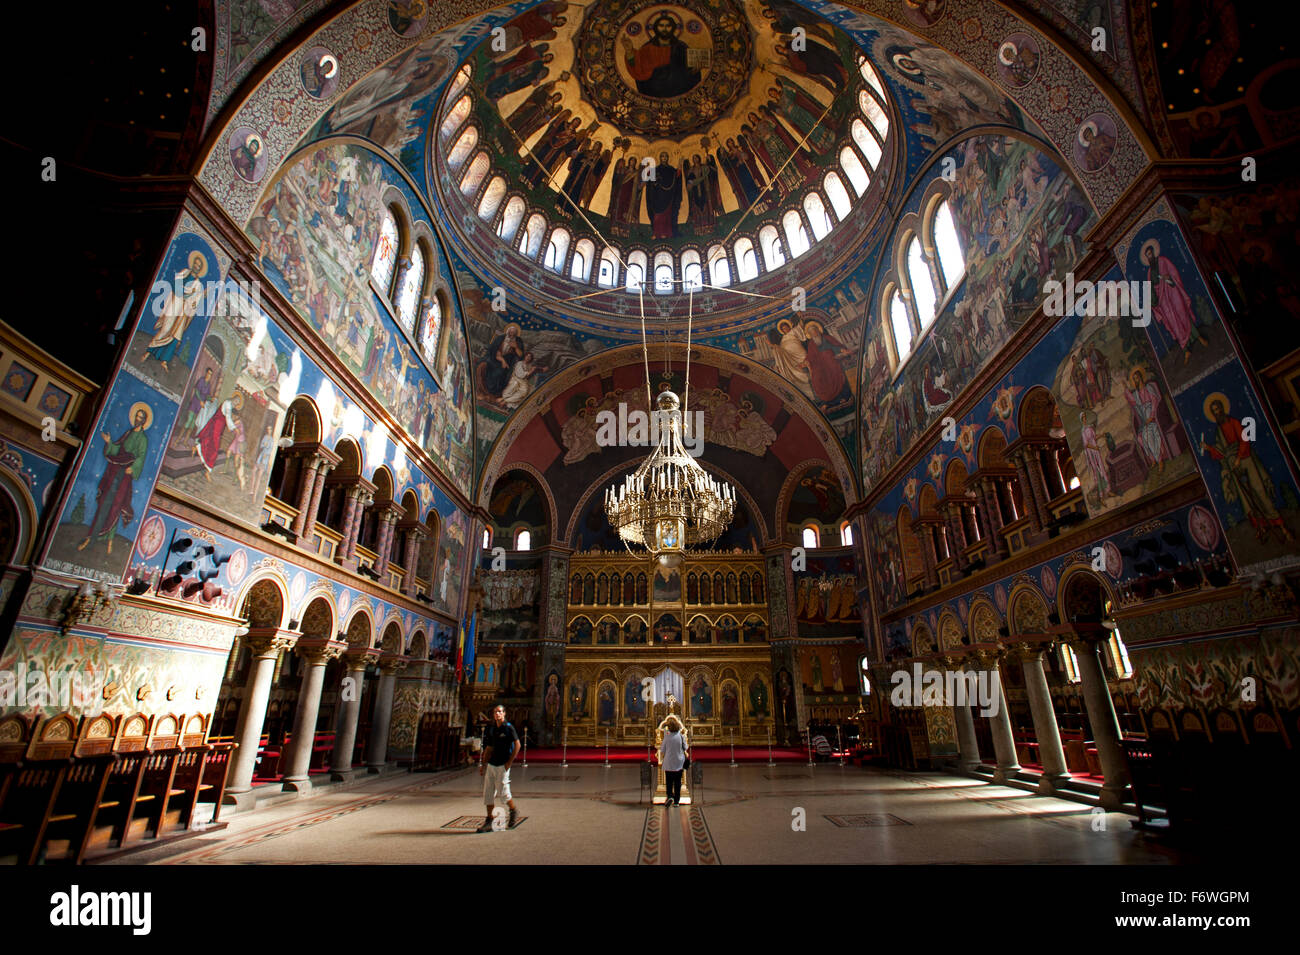 Vue de l'intérieur de la cathédrale orthodoxe, Sibiu, Transylvanie, Roumanie Banque D'Images